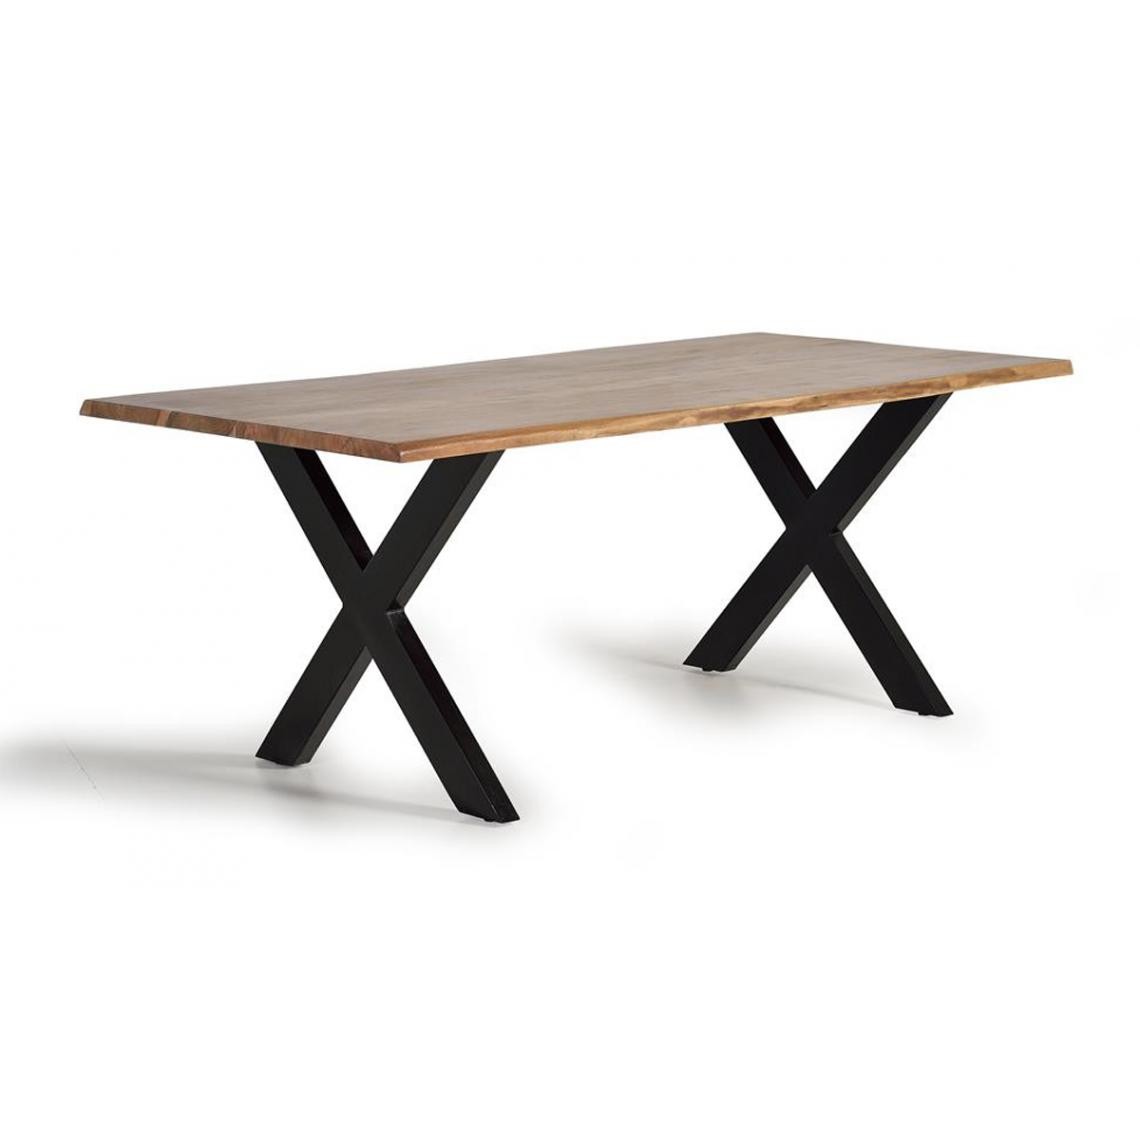 Pegane - Table à manger en bois d'acacia et métal coloris naturel et noir - longueur 180 x profondeur 90 x hauteur 78 cm - Tables à manger